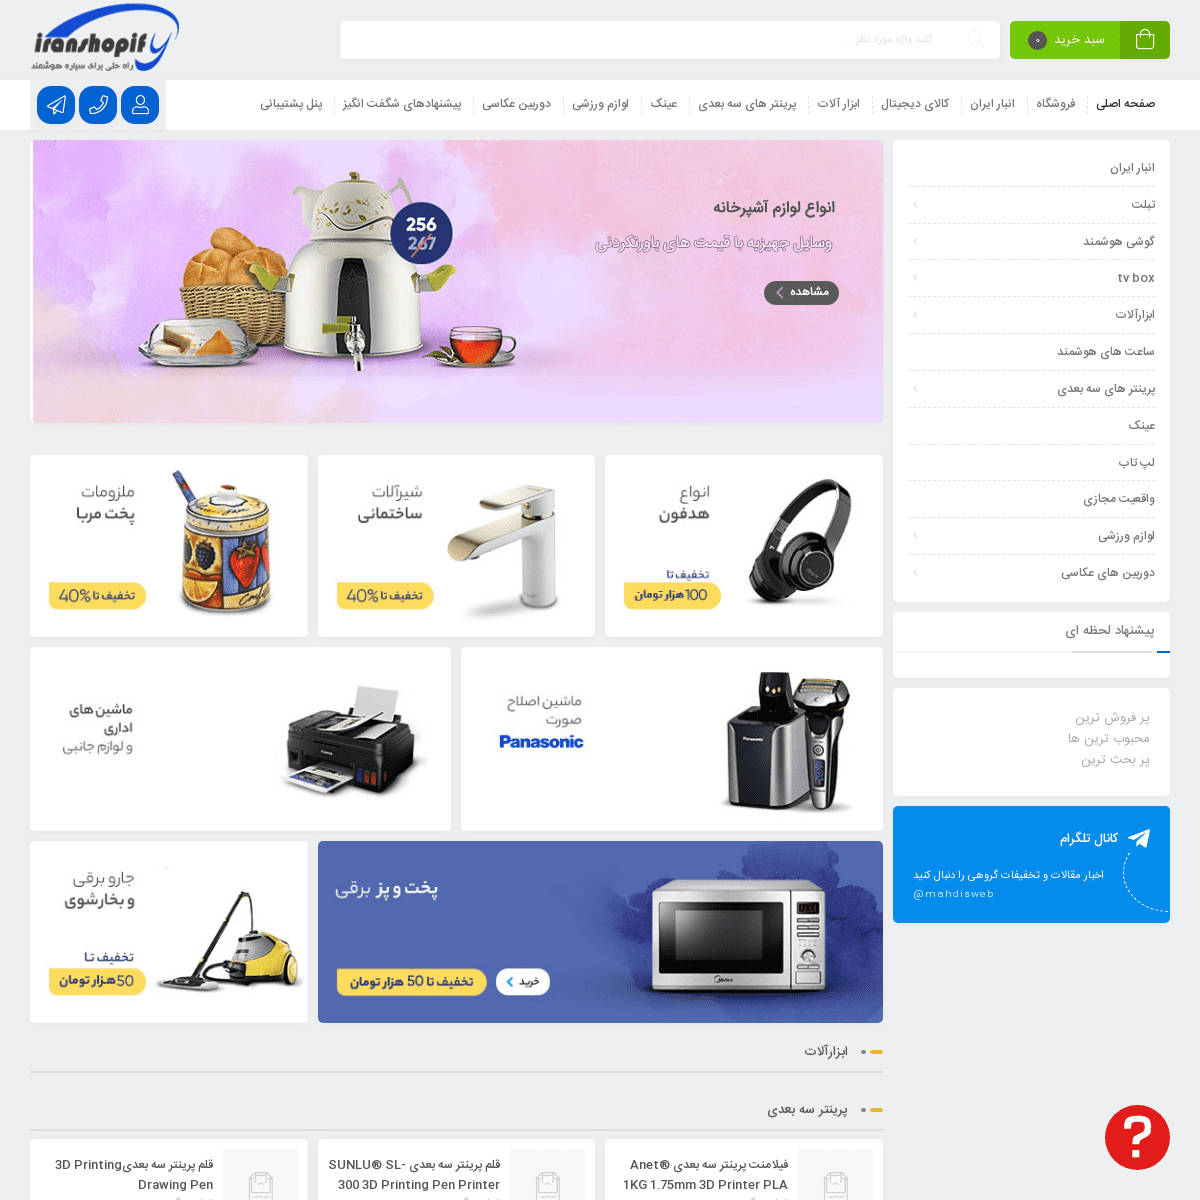 فروشگاه آنلاین ایران شاپیفای – فروش بی واسطه انواع کالا های دیجیتال